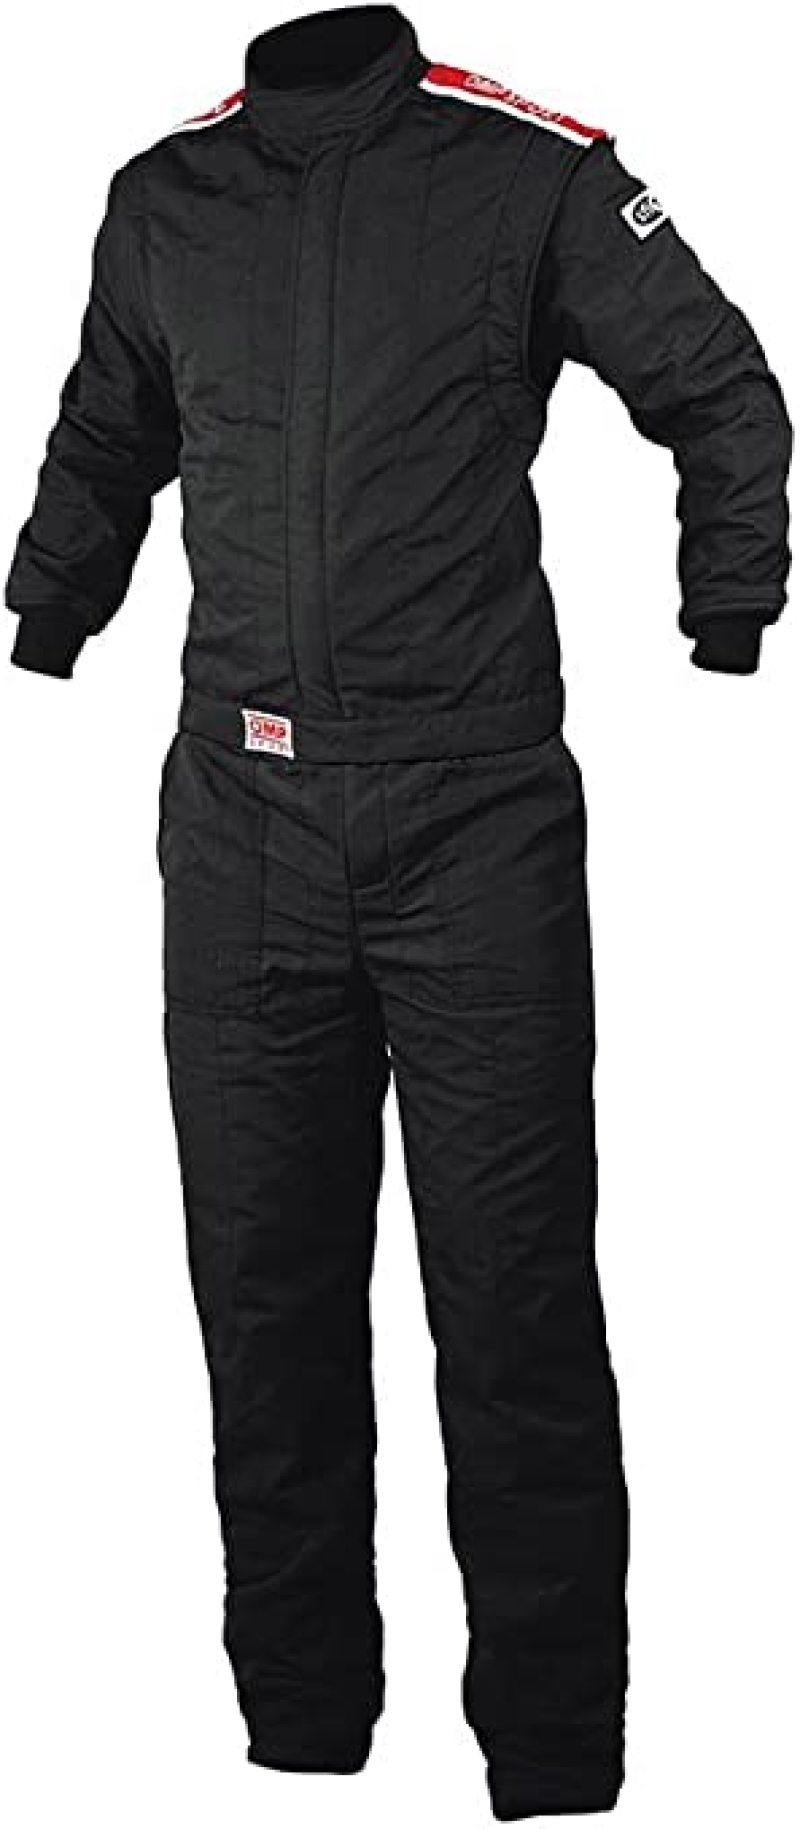 OMP Os 20 Boot Cut Suit - Small (Black) (Fia/Sfi) - IA01848071S